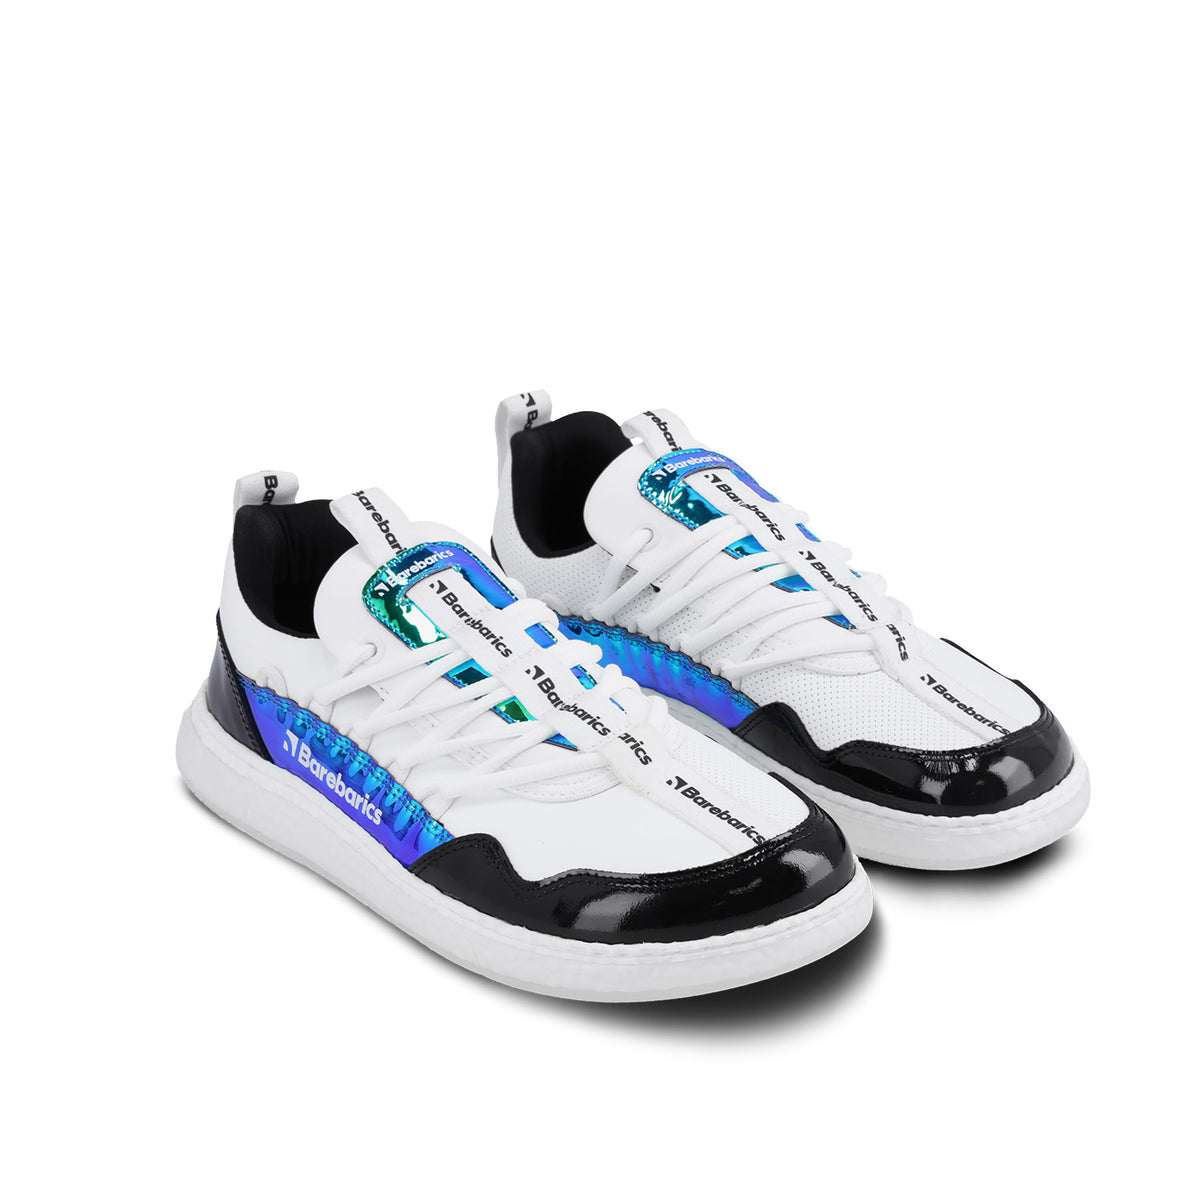 Barefoot Sneakers Barebarics Futura - Iridescent White 4  - OzBarefoot